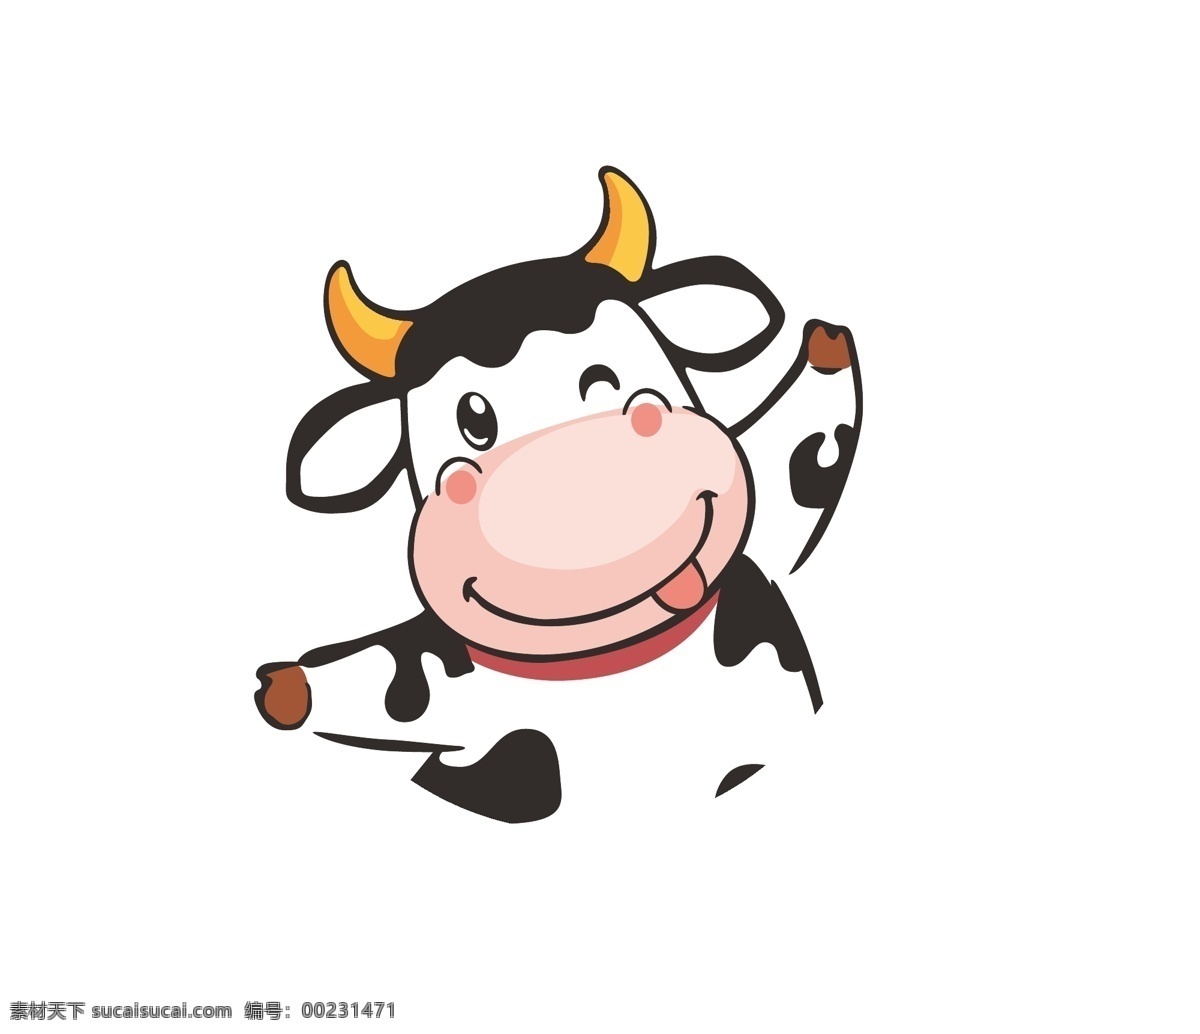 牛牛 矢量 ai文件 矢量素材 可爱奶牛 牛奶 可爱 卡通 印花 牛奶日 新鲜牛奶 纯牛奶 天然牛奶 牛奶海报 设计元素 壁纸 产品图案设计 可爱卡通 面料图案设计 动漫动画 动漫人物 矢量文件